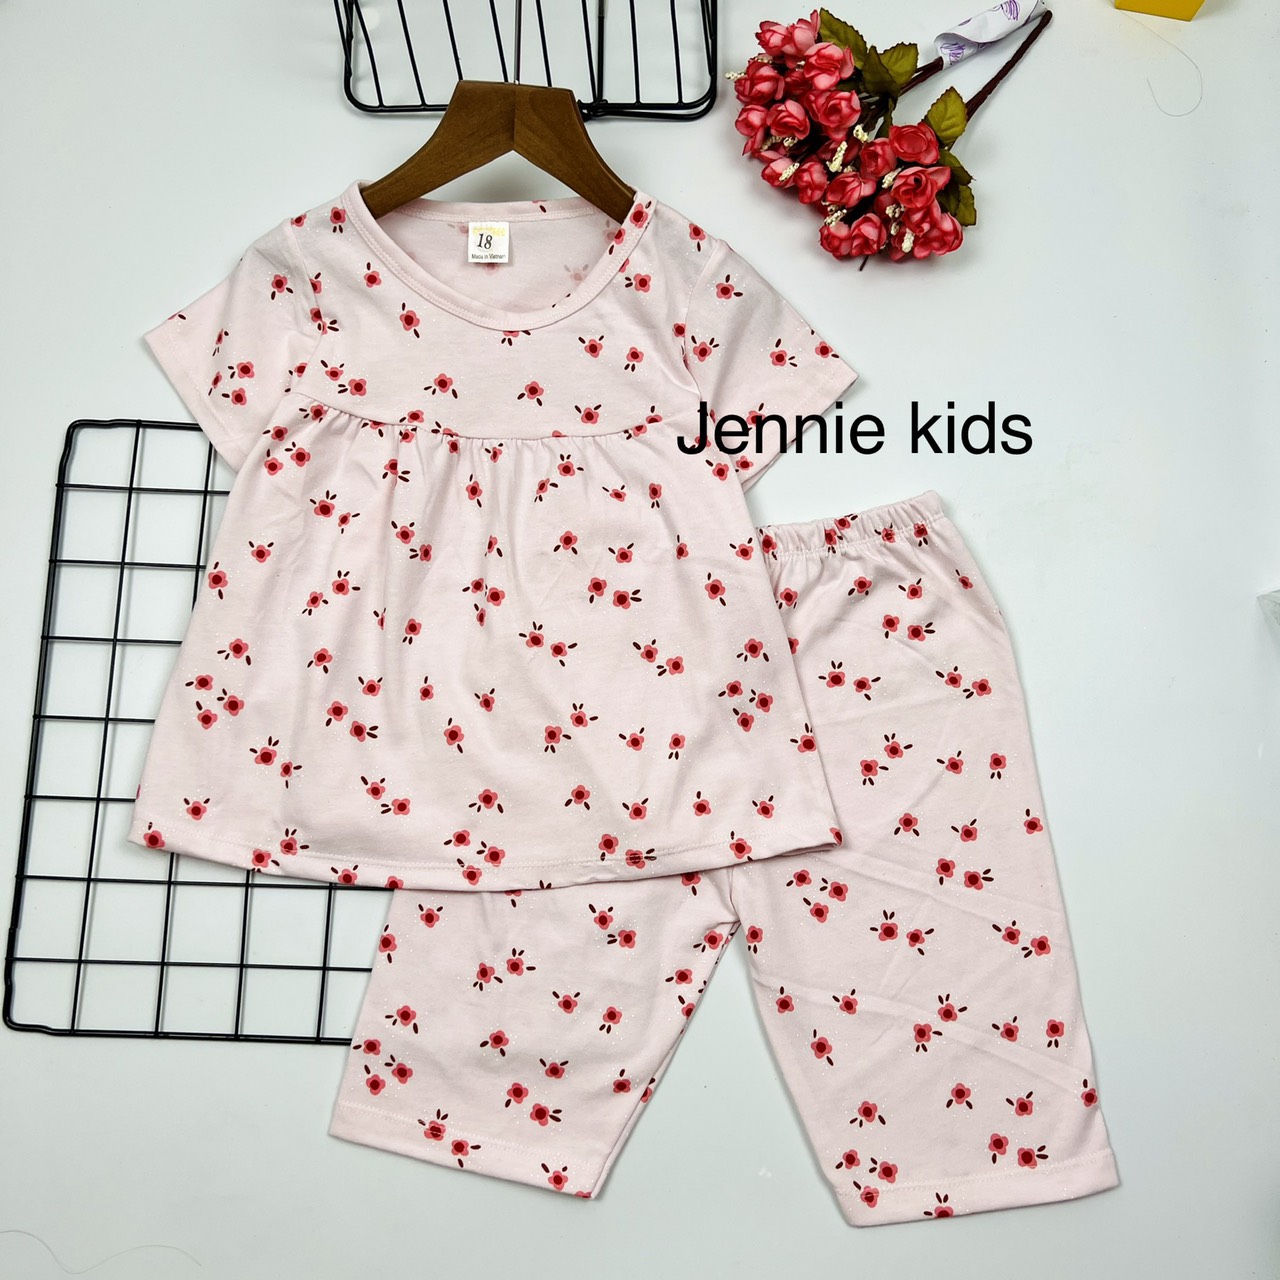 Đồ bộ bé gái, bộ bé gái ngắn tay size đại baby doll vải cotton xuất Jennie kids J468